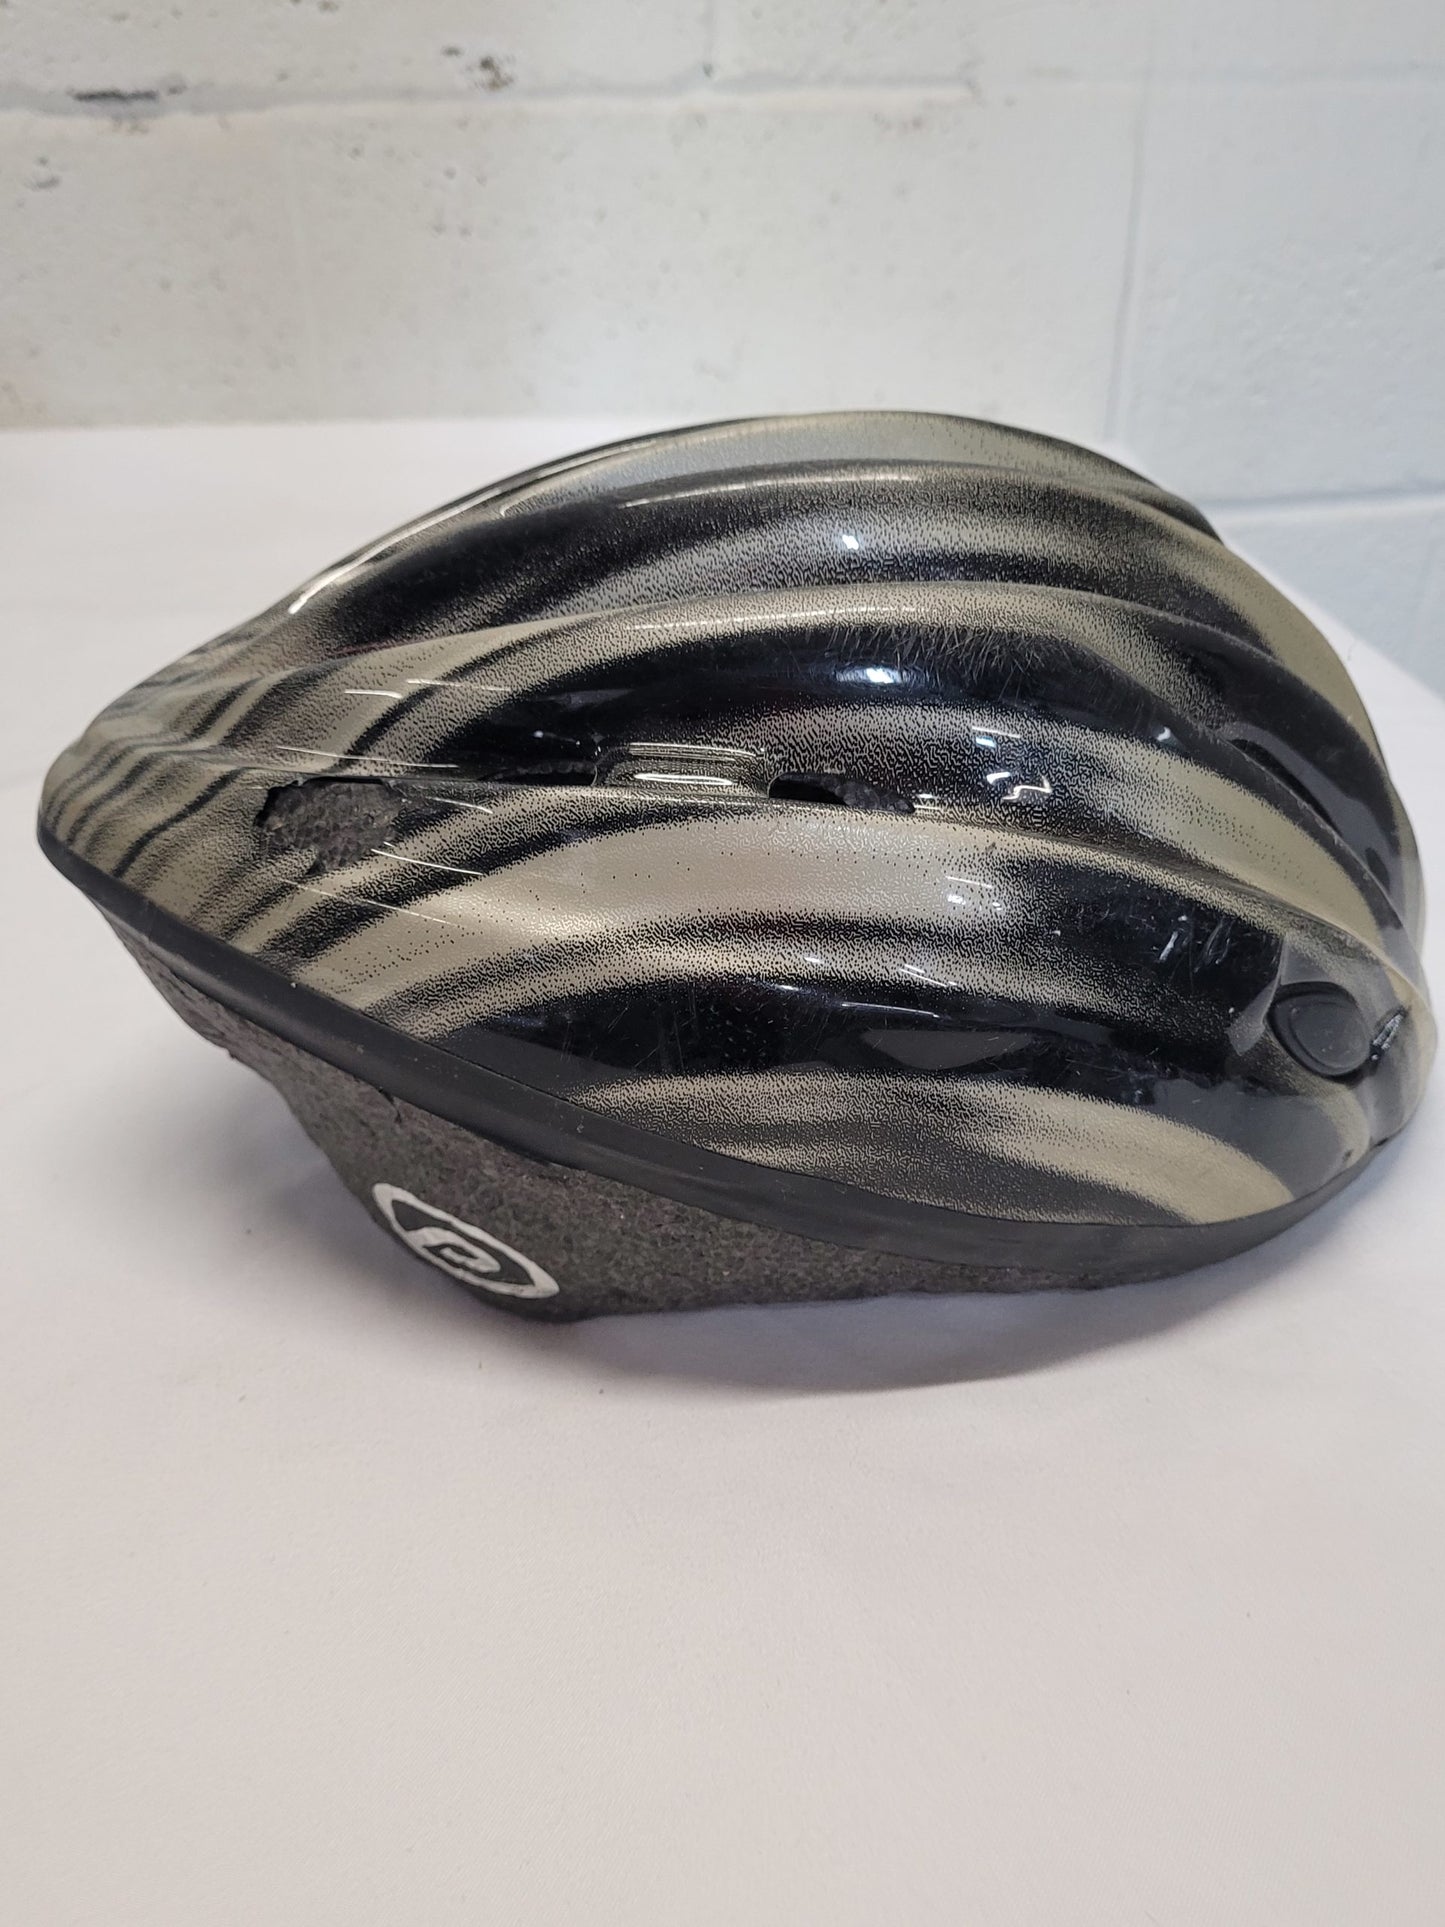 Adult Bicycle Helmet